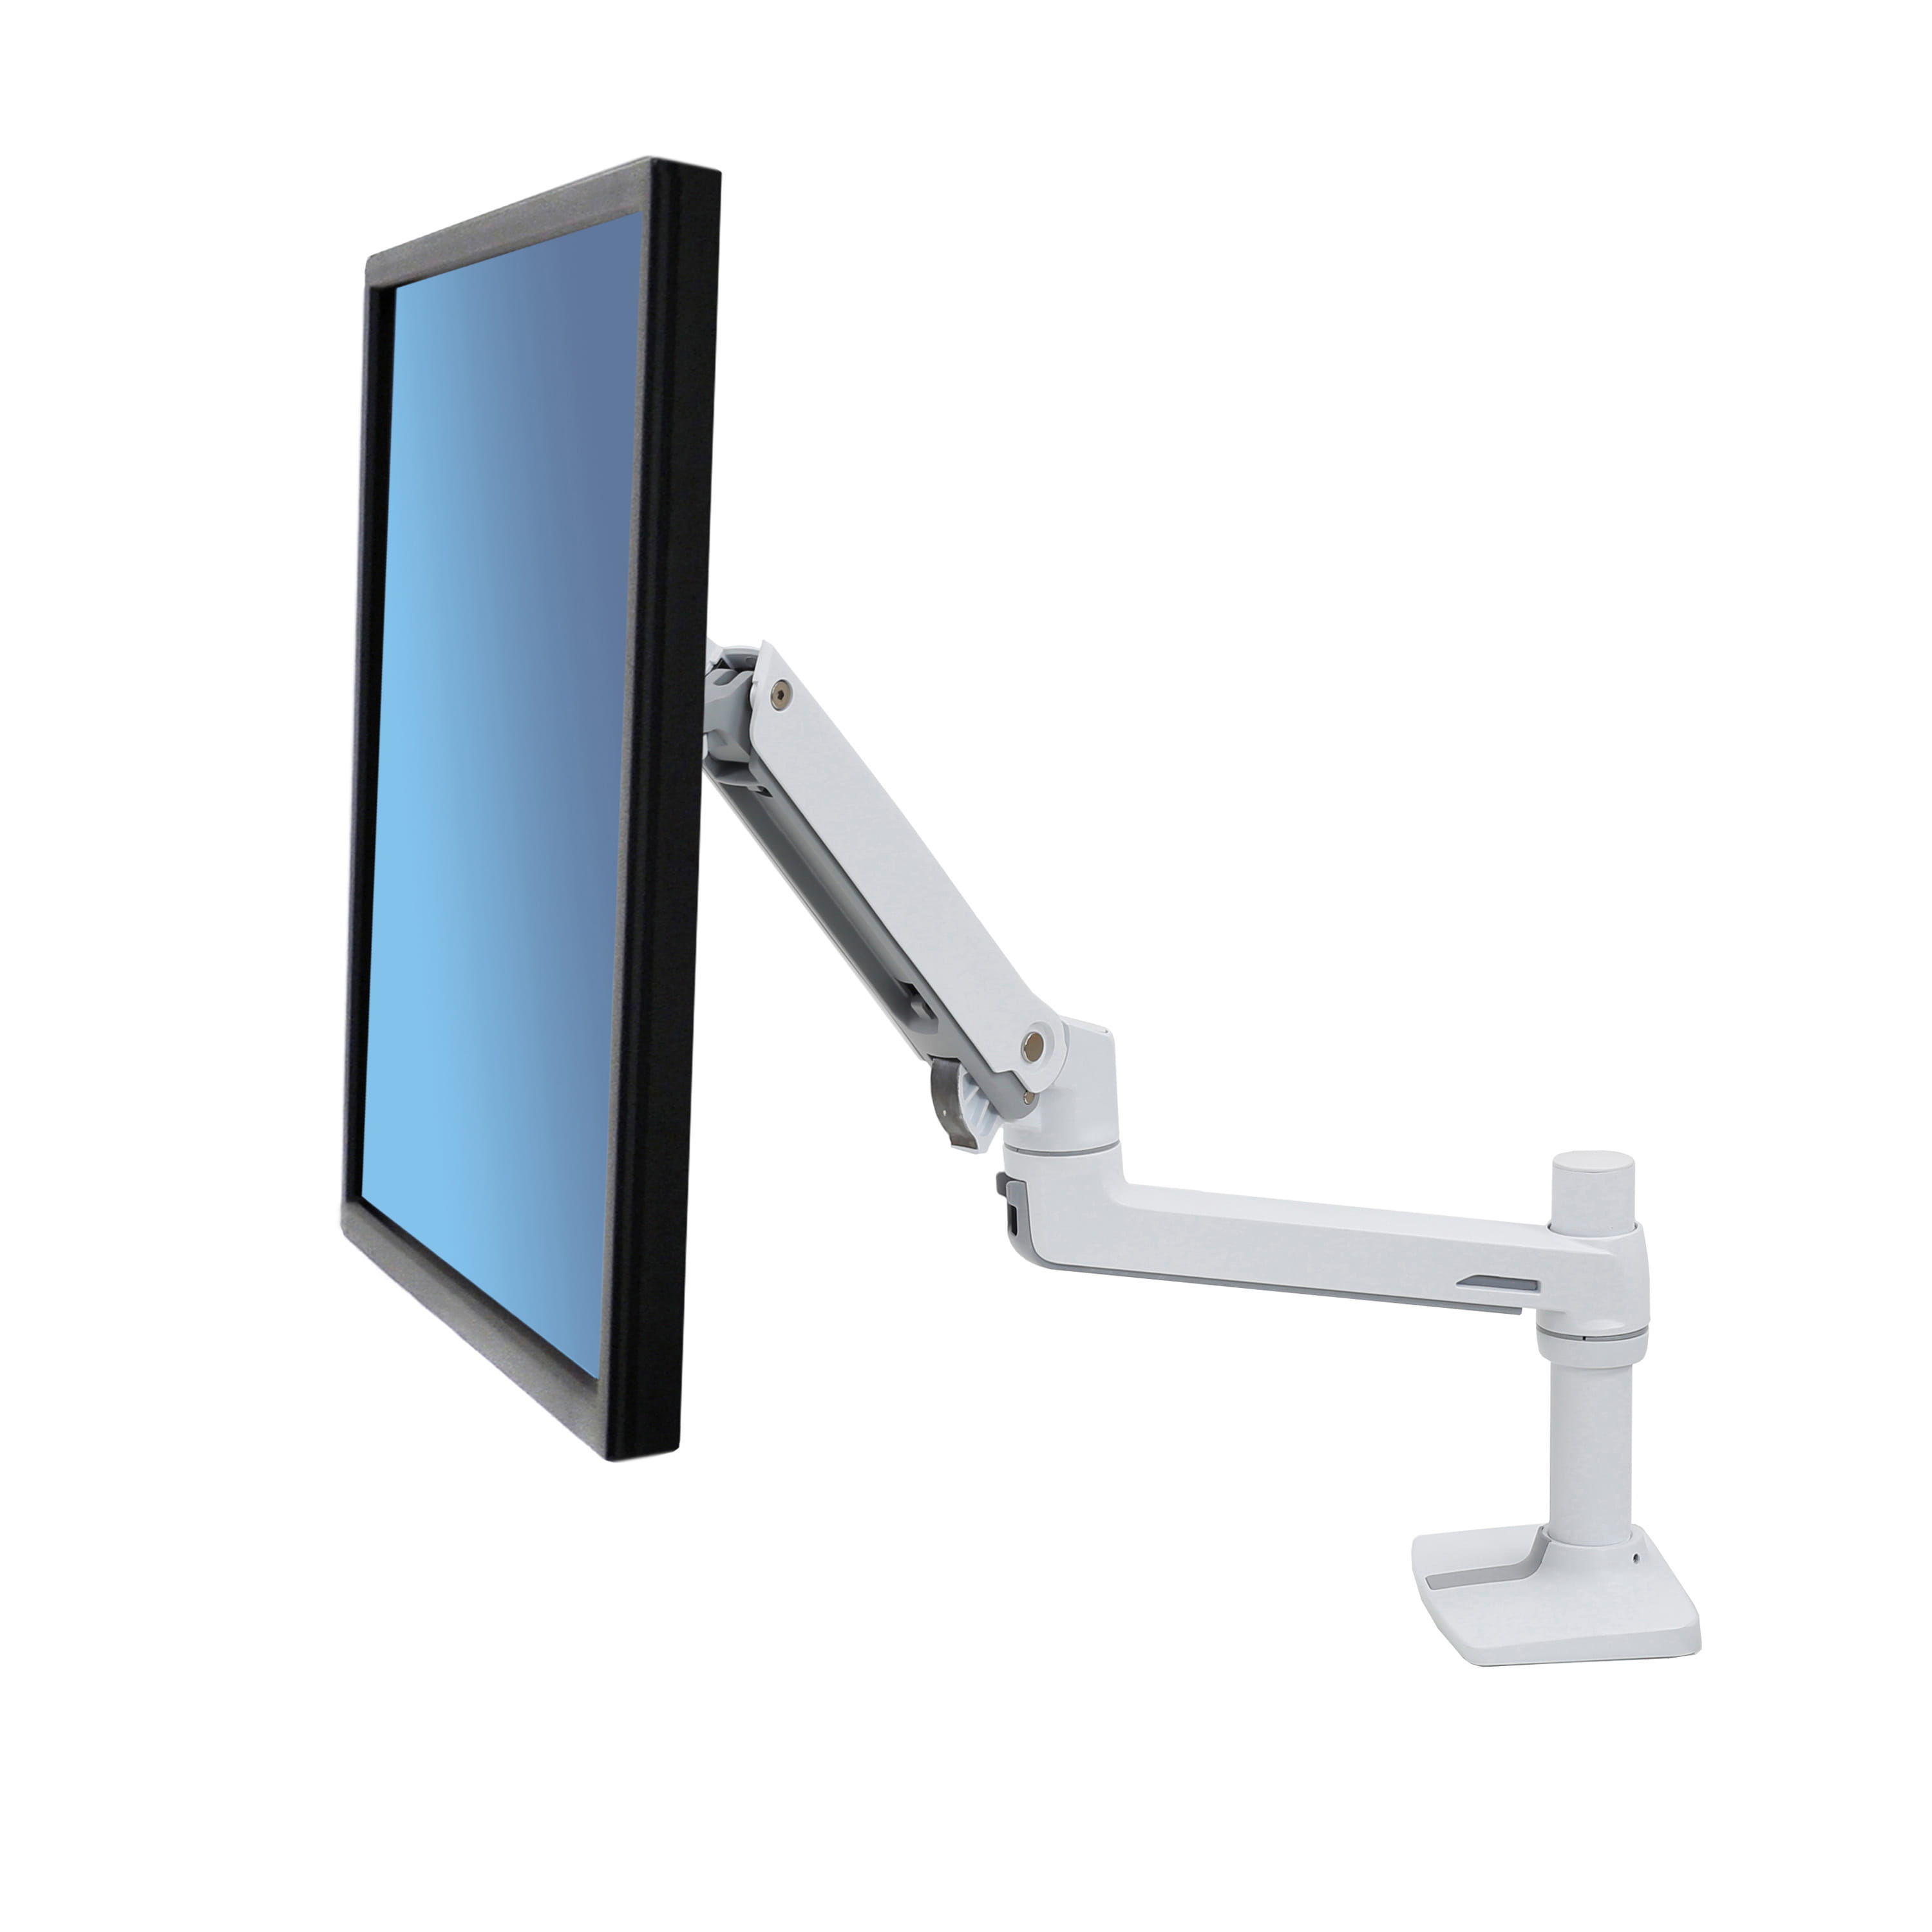 Ergotron LX Desk Arm - Befestigungskit (Stange, C-Klammer, 2 Tischplattenmontageklammern, Monitorarm) für LCD-Display - Aluminium, Stahl - weiß - Bildschirmgröße: bis zu 81,3 cm (bis zu 32 Zoll)